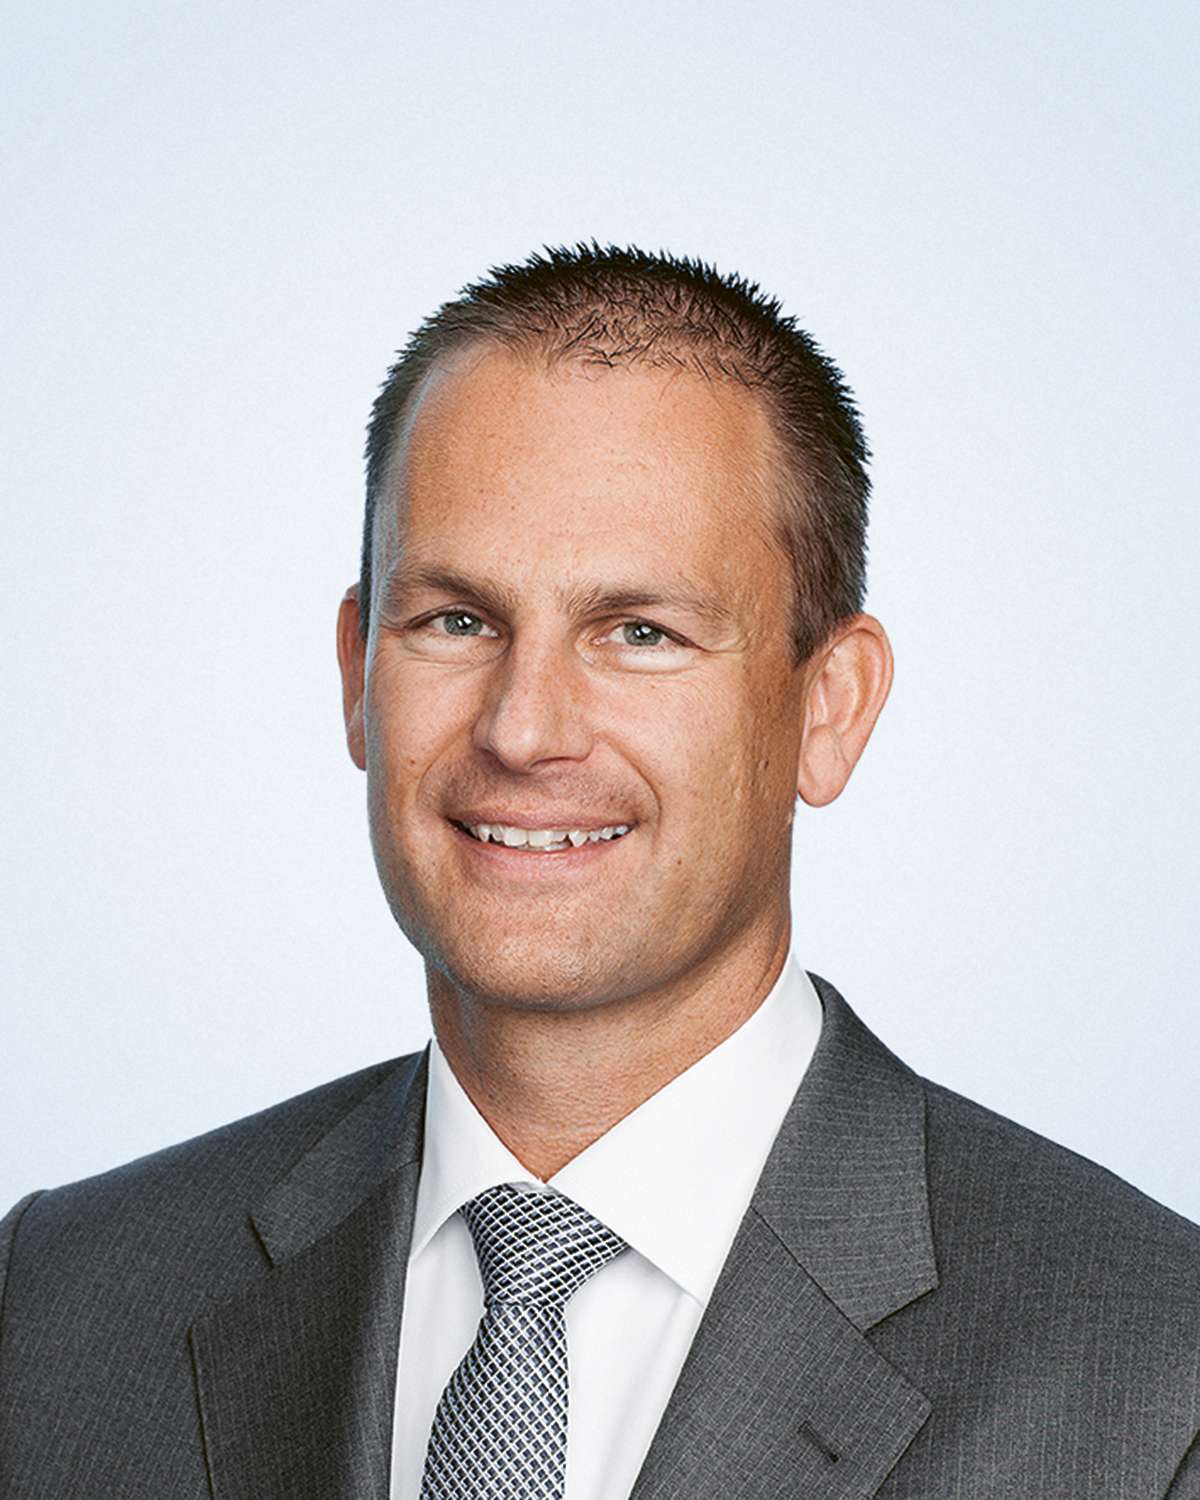 Stefan Heiniger, CEO